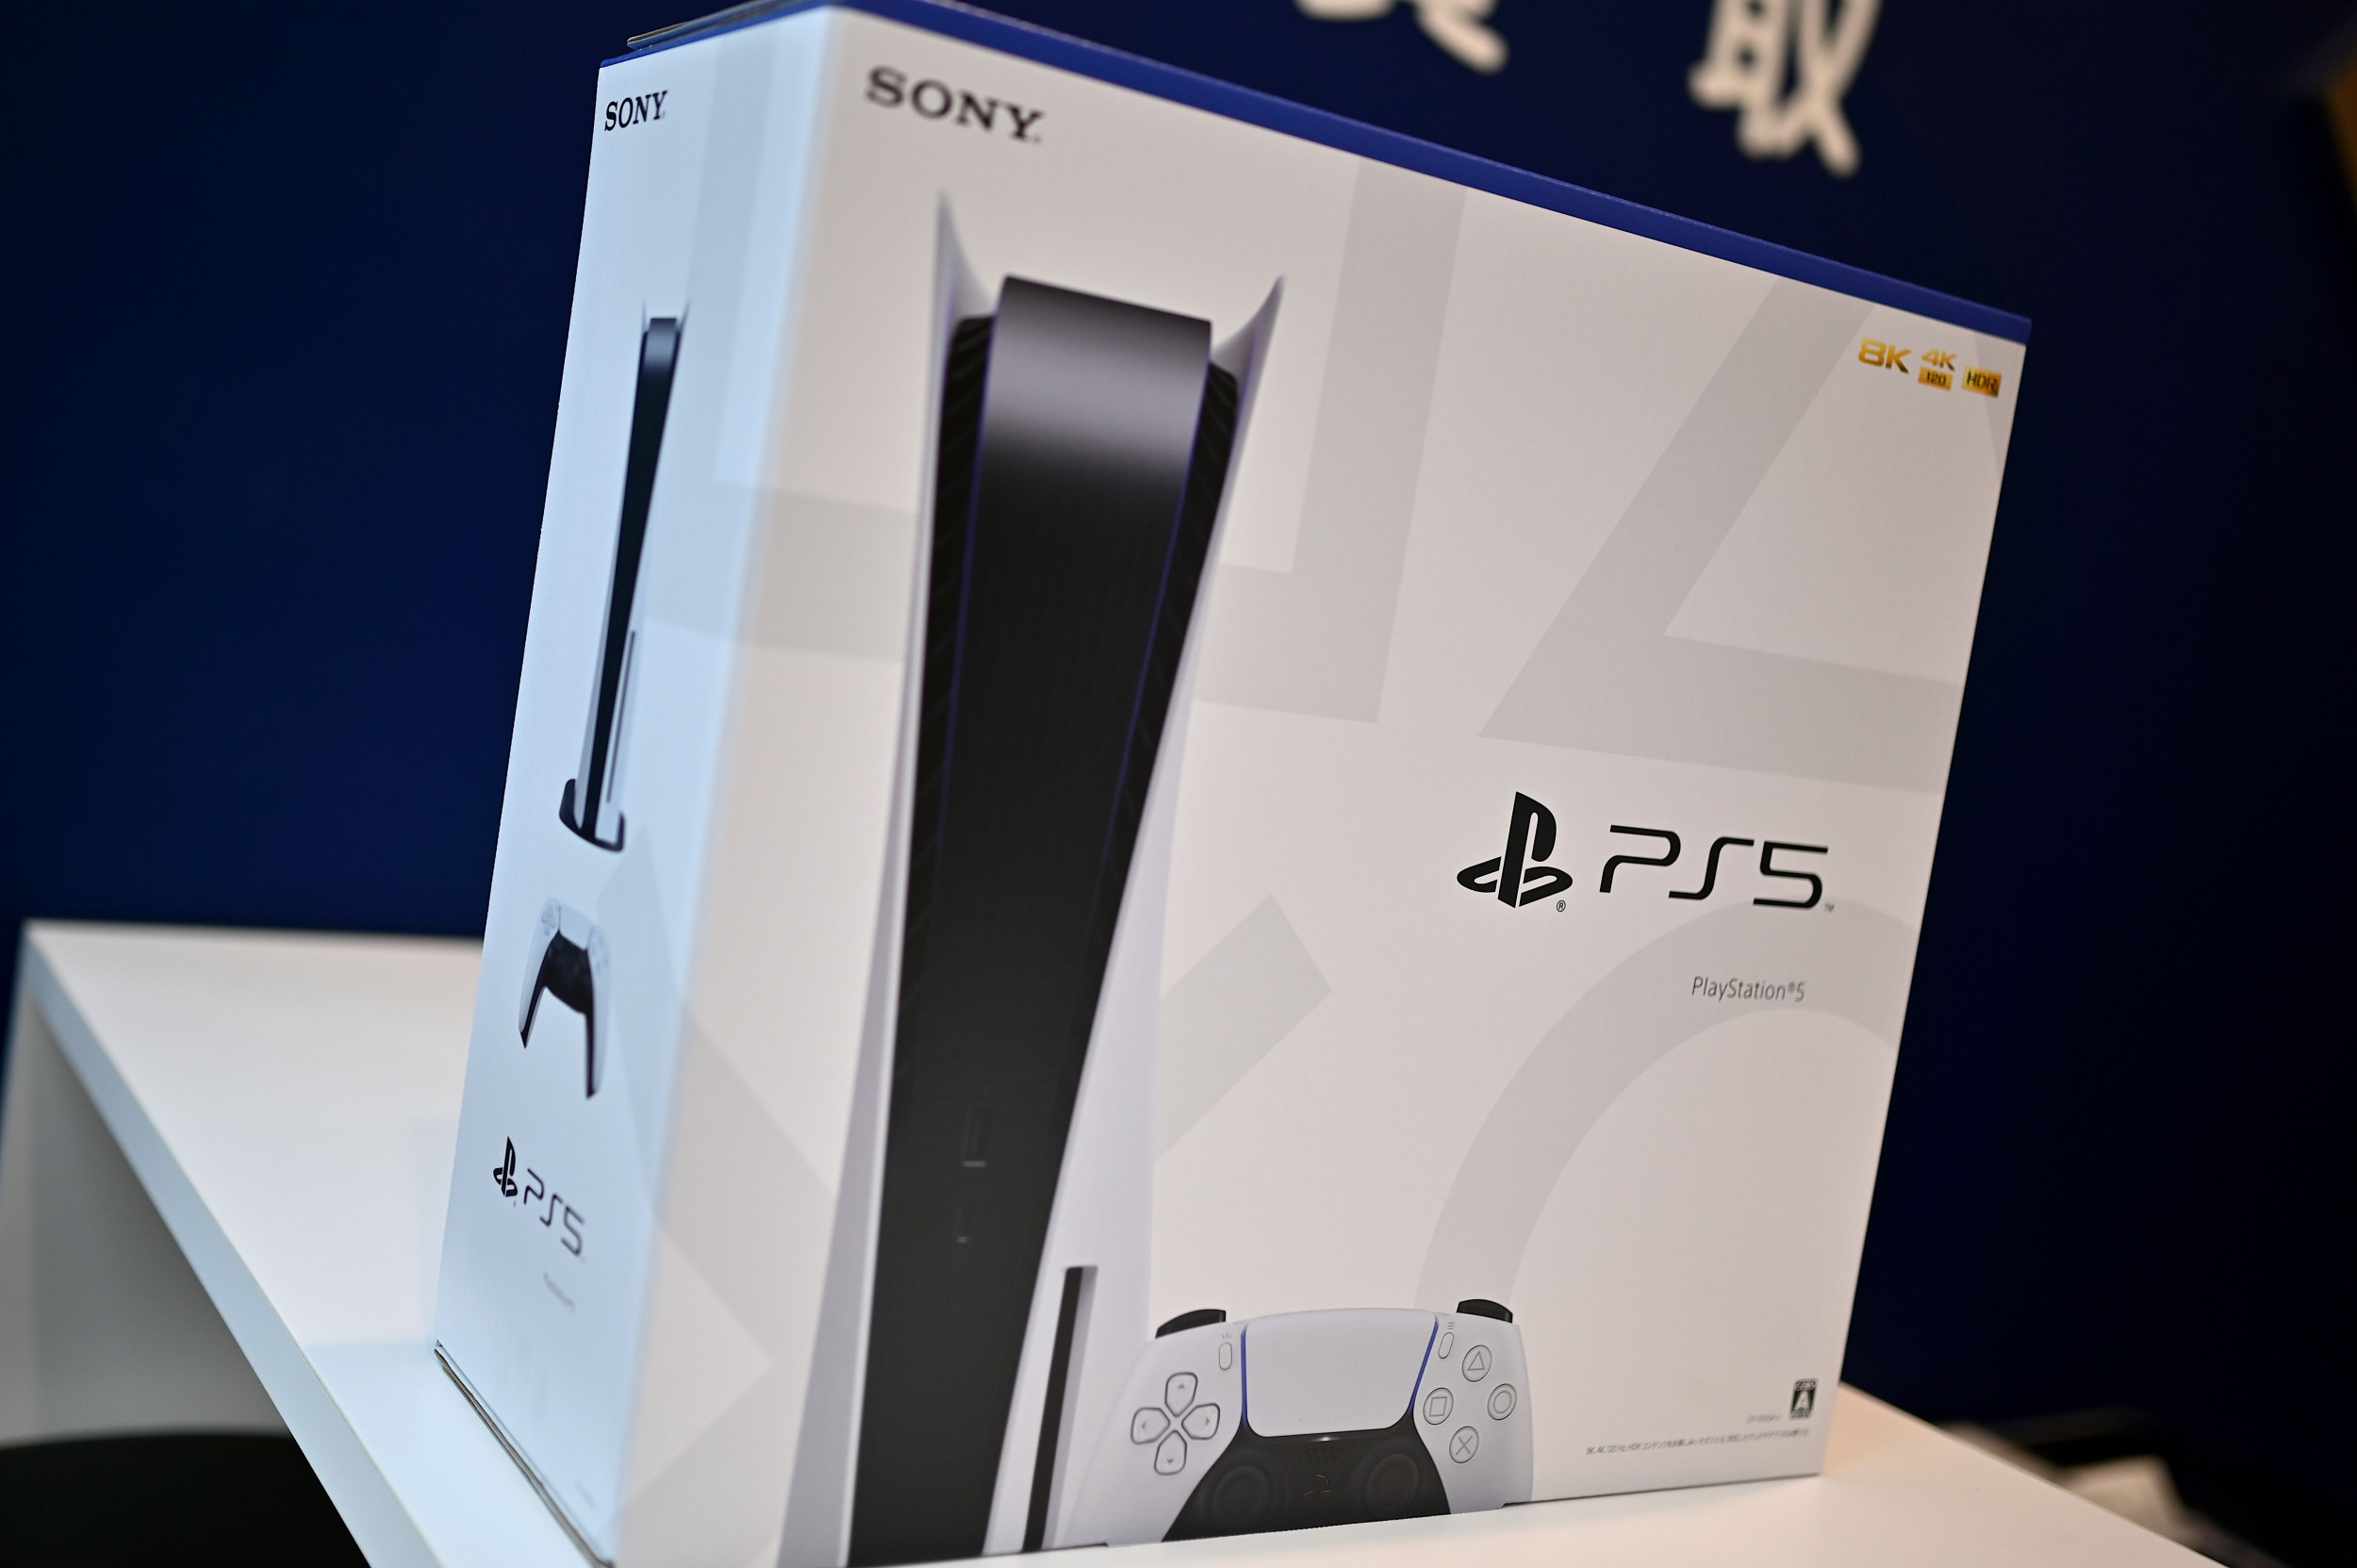 PS5 Restock Updates for GameStop, Amazon, Walmart, PlayStation 